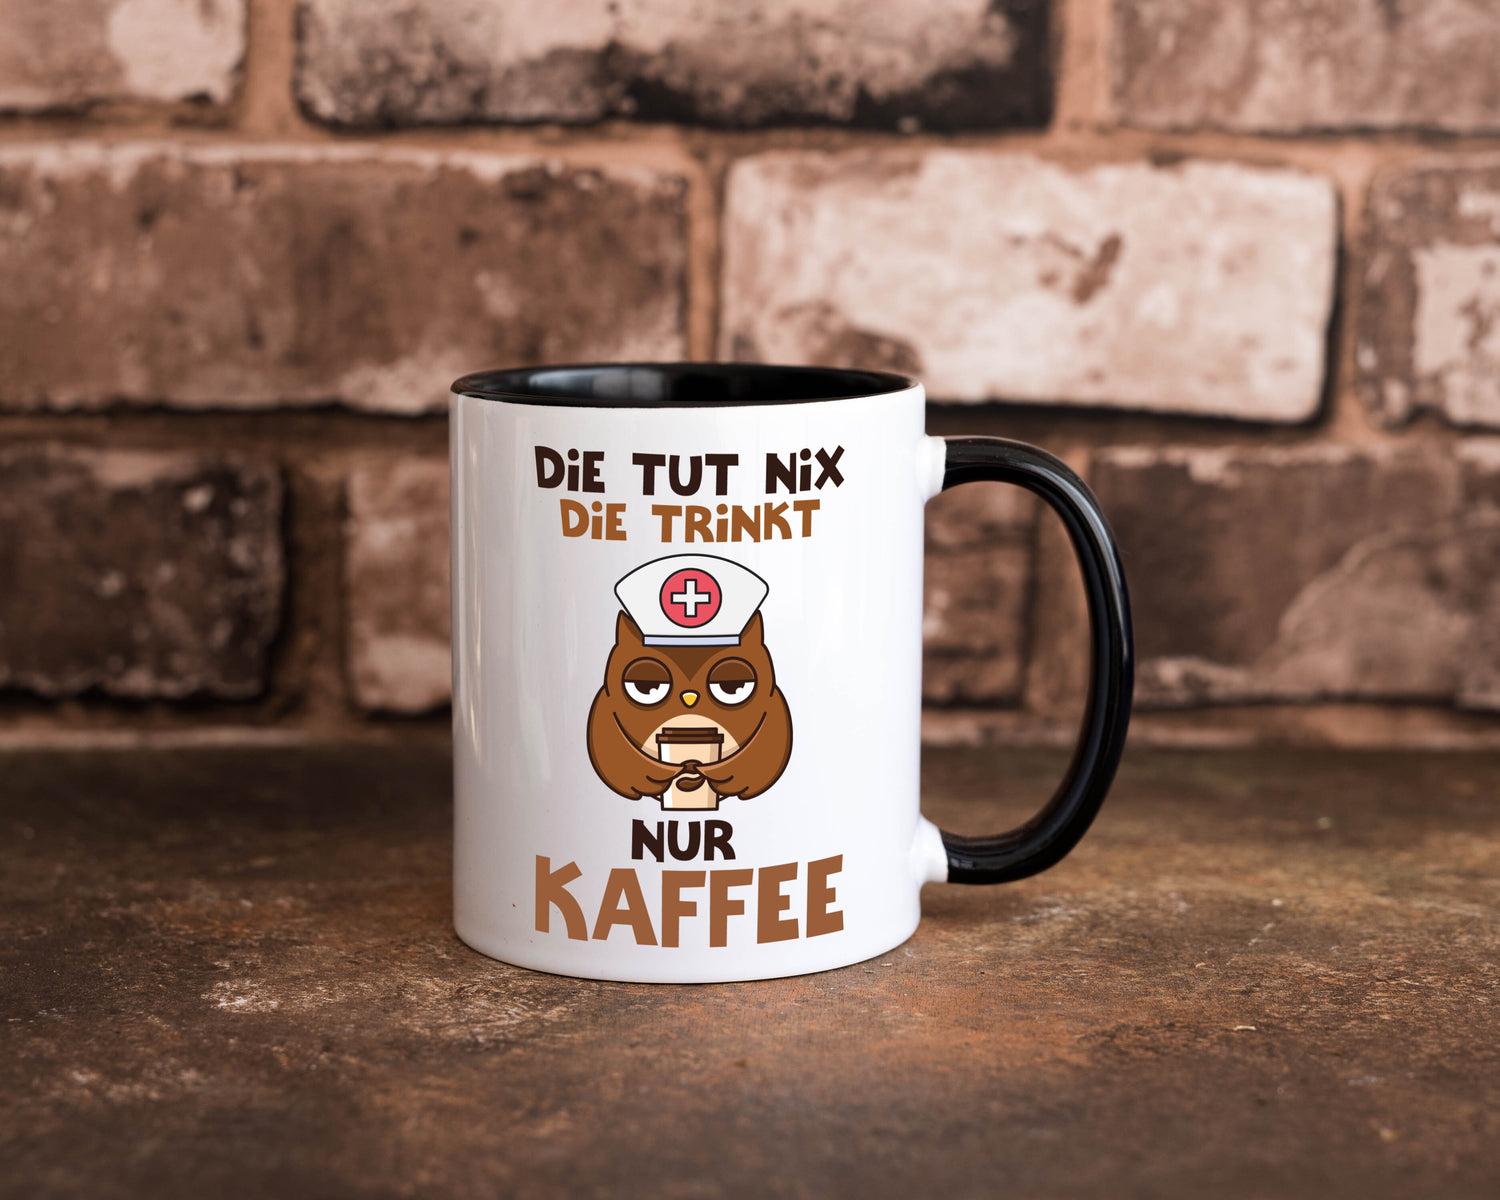 Die tut nix! | Spruch | Kaffee | Krankenschwester Tasse Weiß - Schwarz - Kaffeetasse / Geschenk / Familie